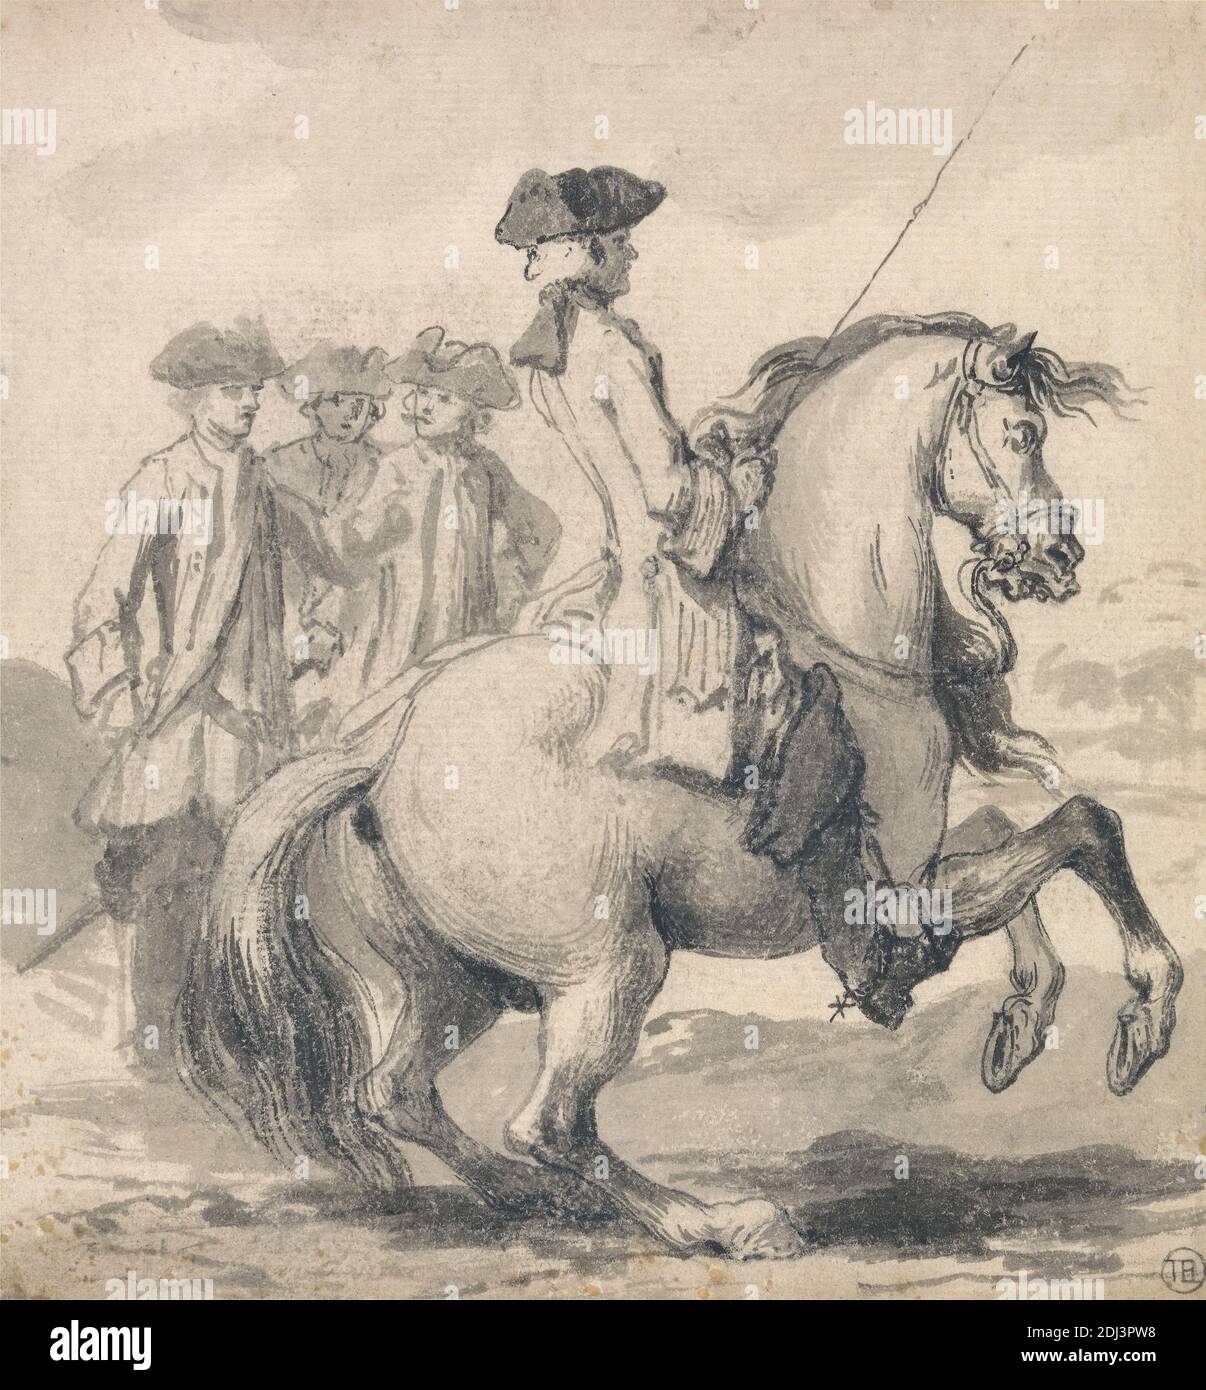 El Manege-Gallop con la pierna derecha' grabado como placa 14 en 'veinticinco acciones del caballo de control...', John Vanderbank, 1694–1739, británico, 1729, pluma, en tinta gris, tinta negra, grafito, y lavado gris en medio, ligeramente texturizado, crema, papel laico, Hoja: 6 5/8 × 6 1/4 pulgadas (16.8 × 15.9 cm), estudio de la figura, figuras (representaciones), caballo (animal), jinetes, equitación, jinetes, hombres, arte deportivo Foto de stock